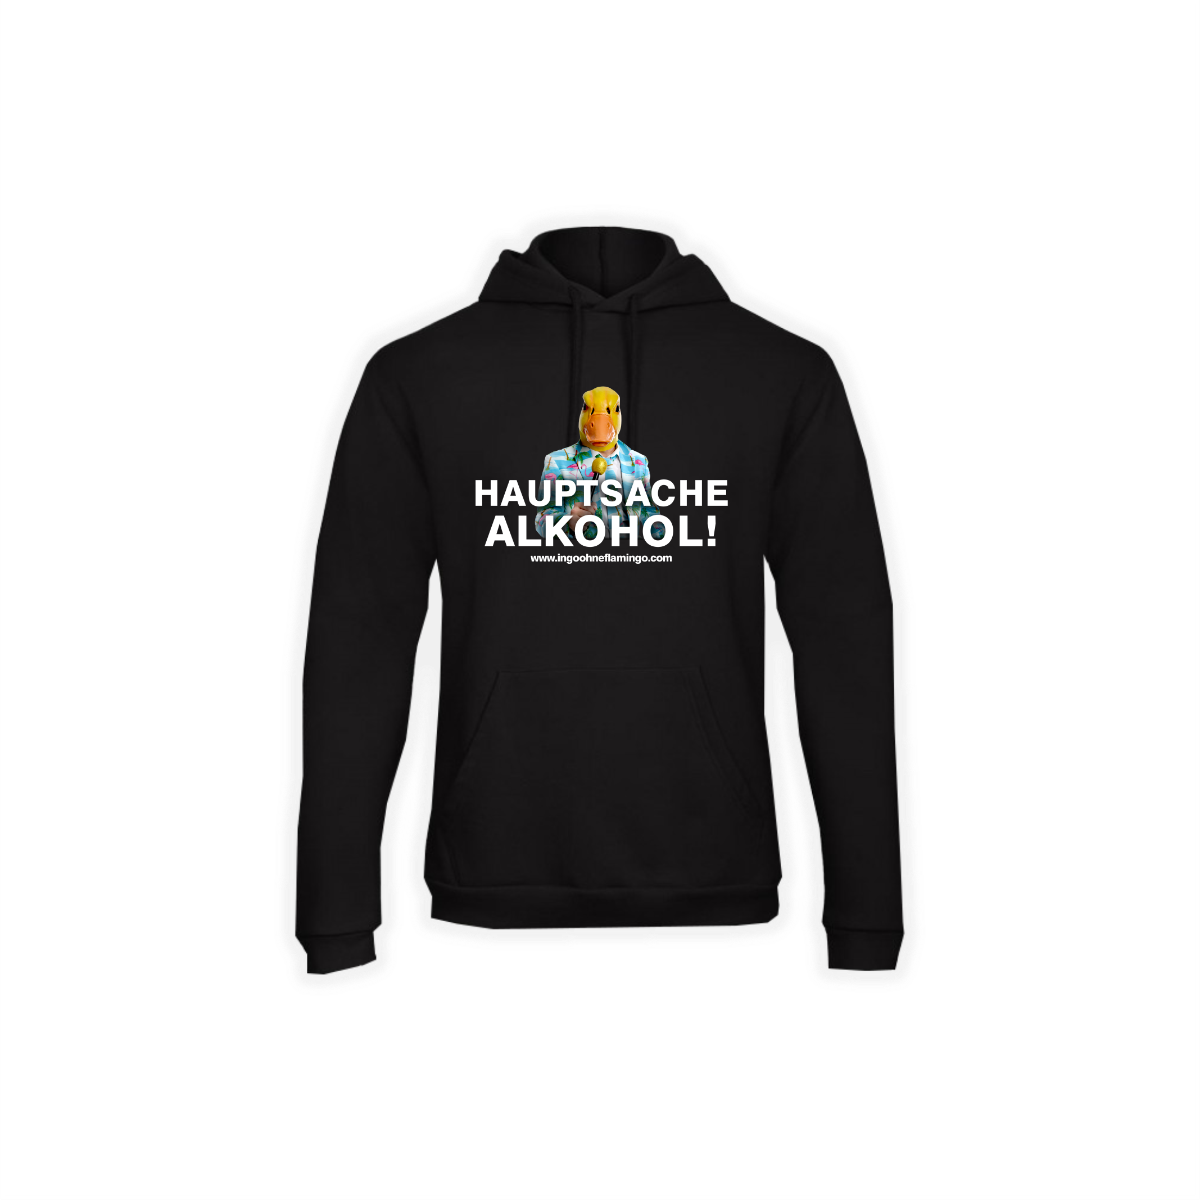 Kapuzen Sweat-Shirt "HAUPTSACHE ALKOHOL" schwarz